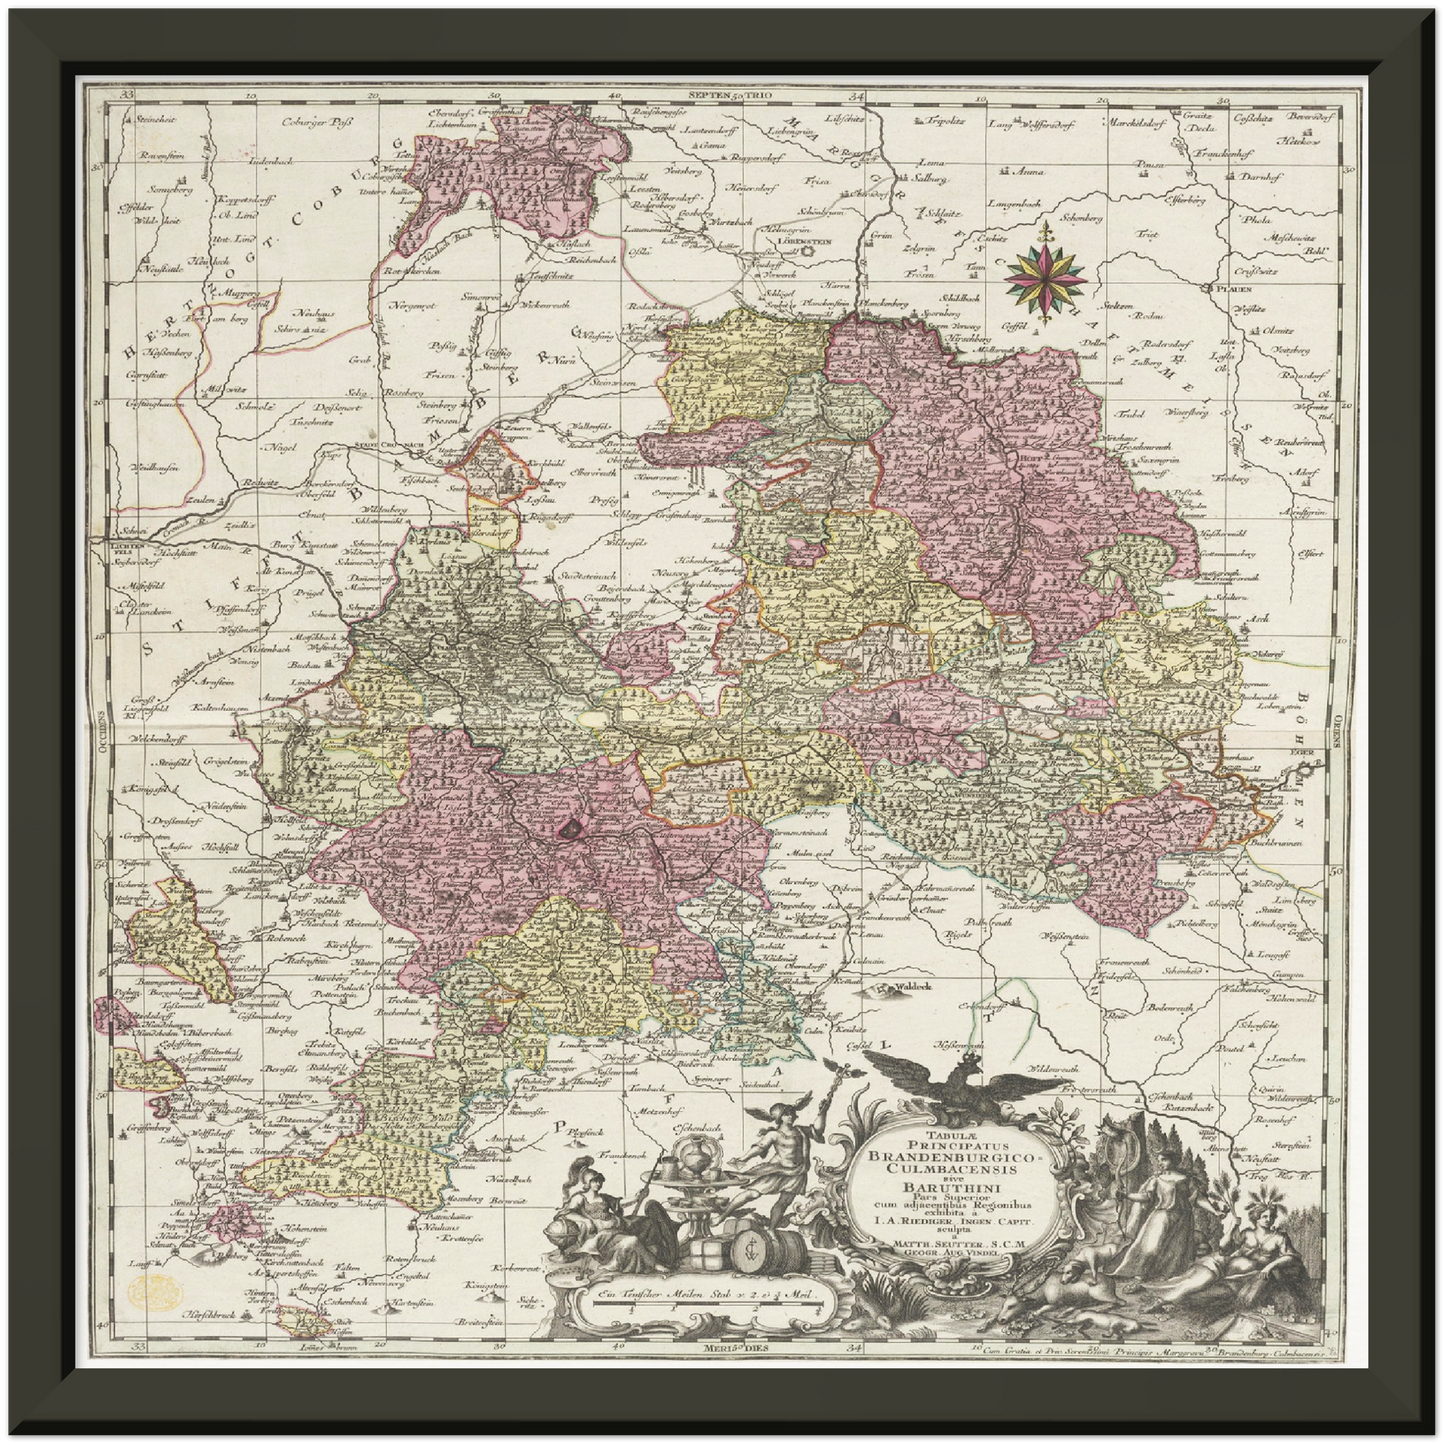 Historische Landkarte Bayreuth um 1750